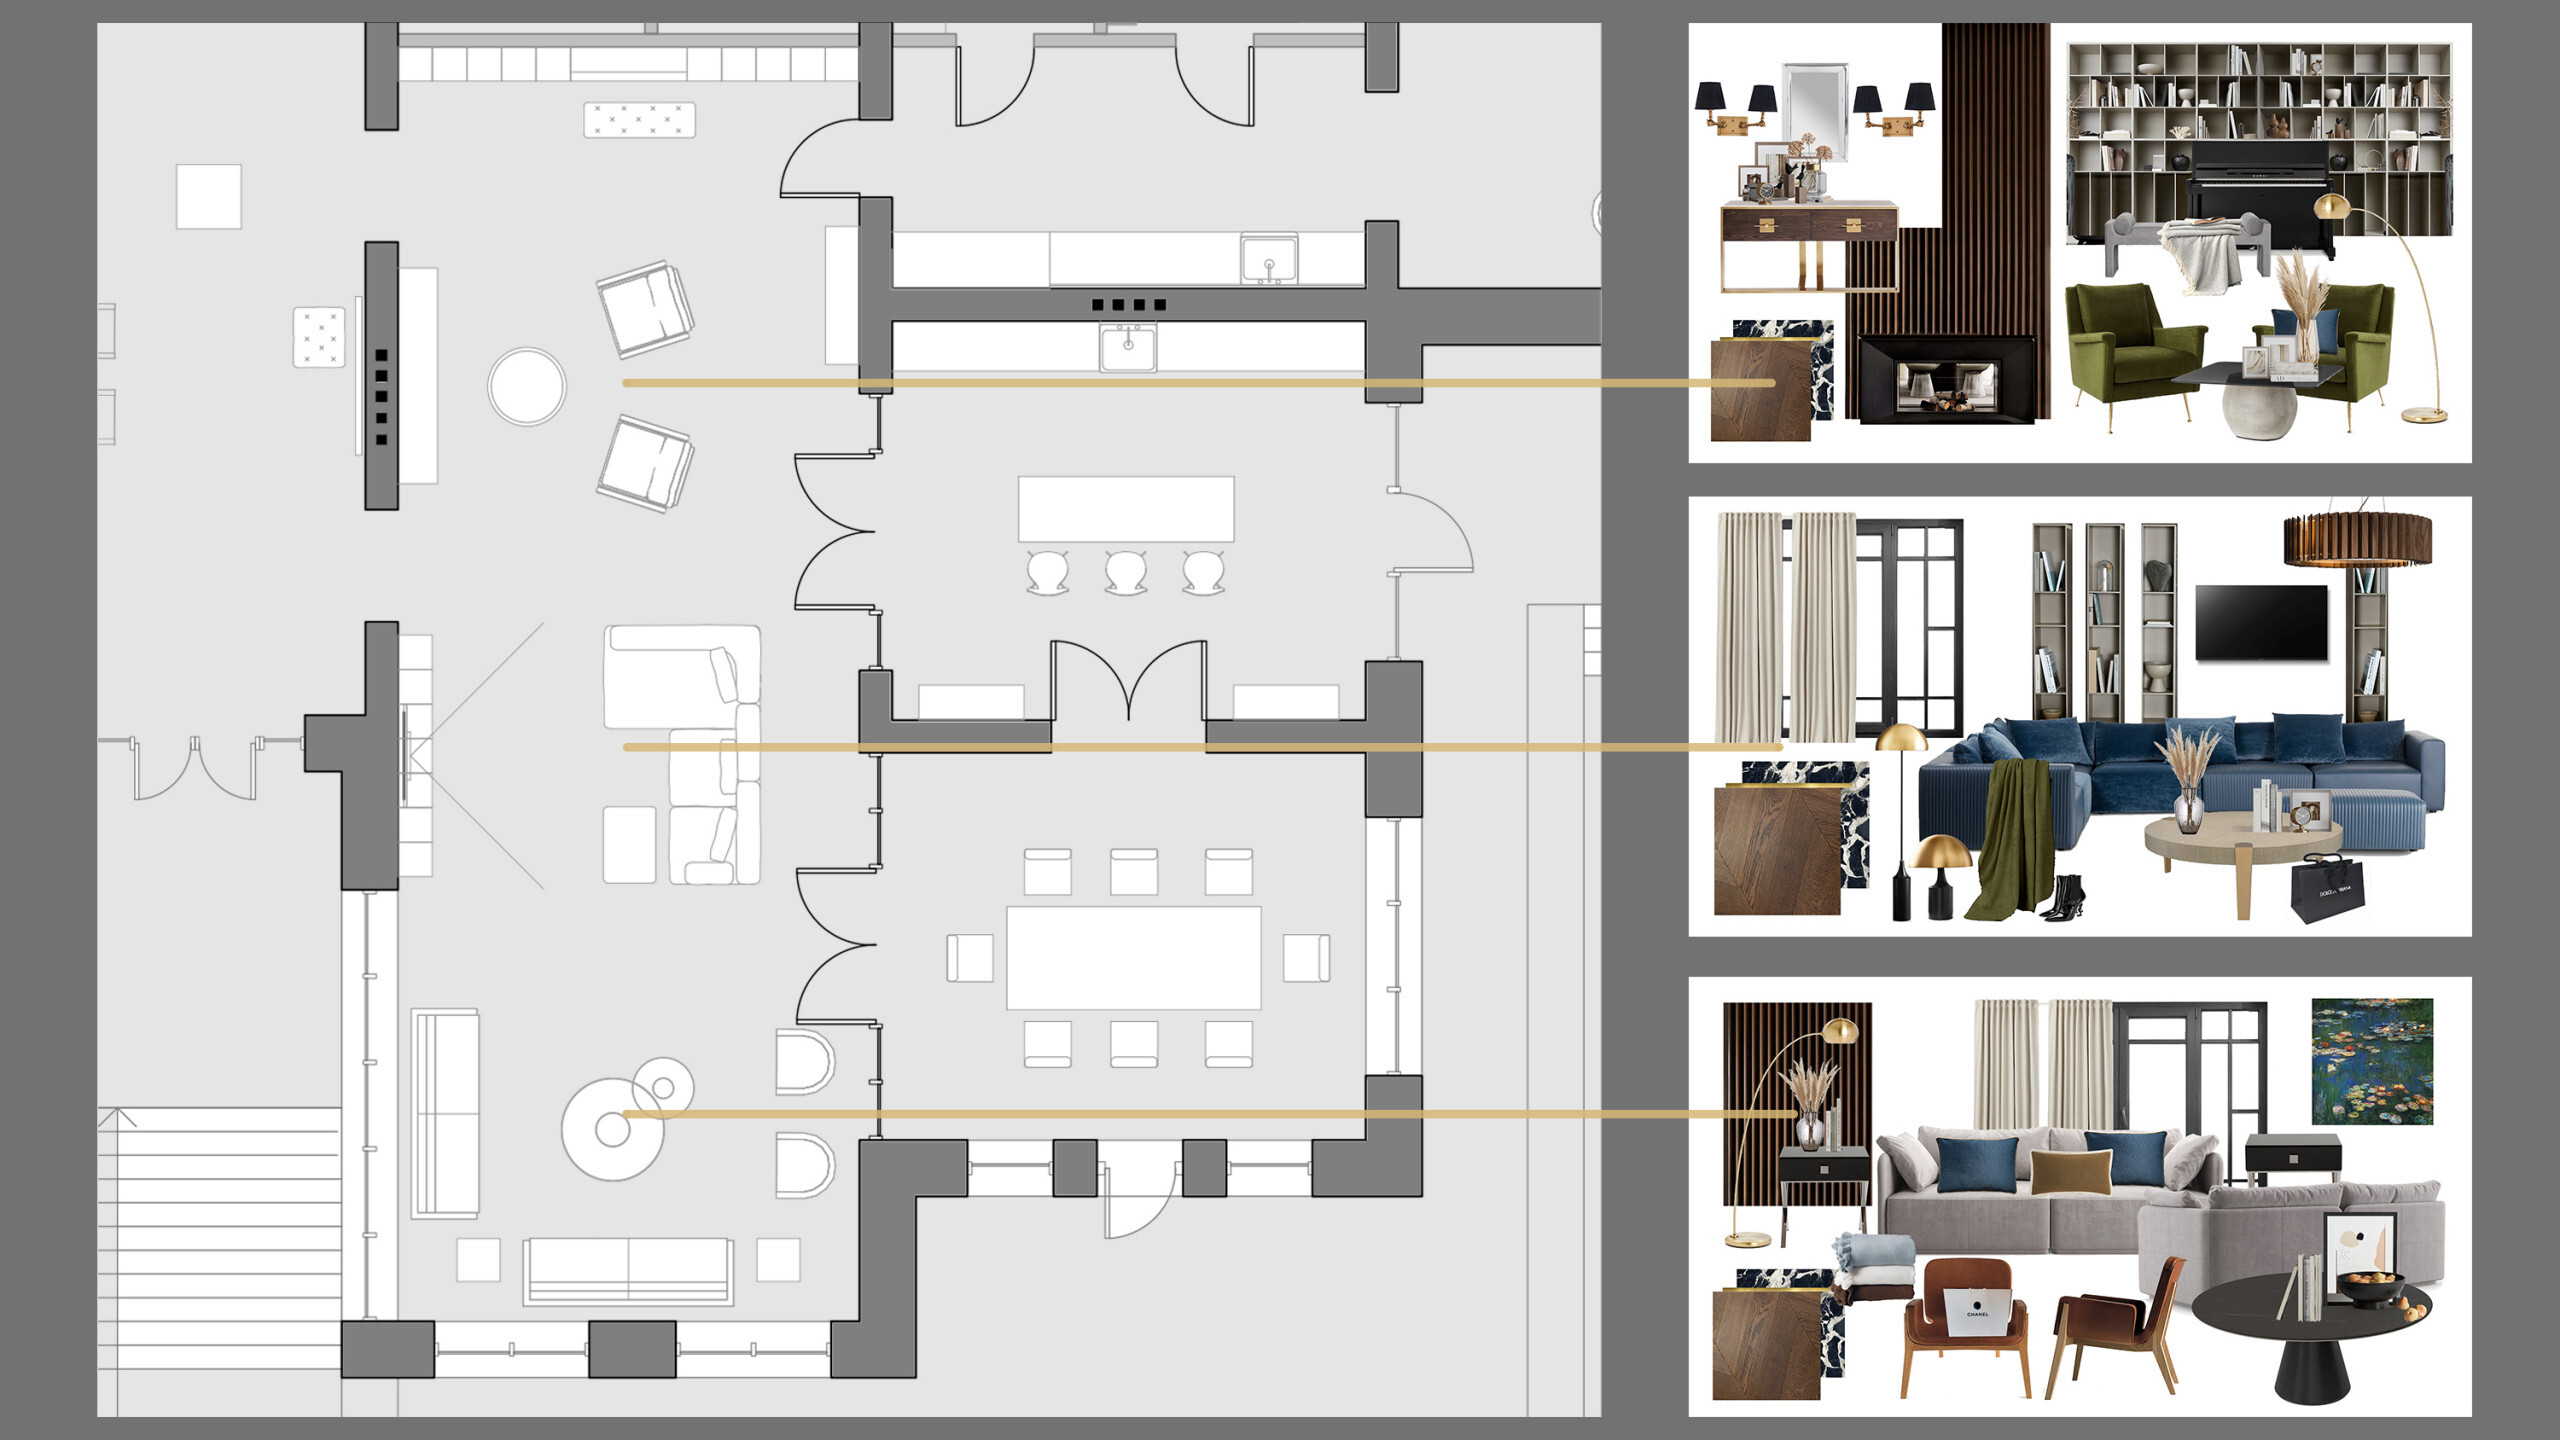 Интерьер с зонированием, проходной, с кабинетом и open space в современном стиле, в восточном стиле и ампире